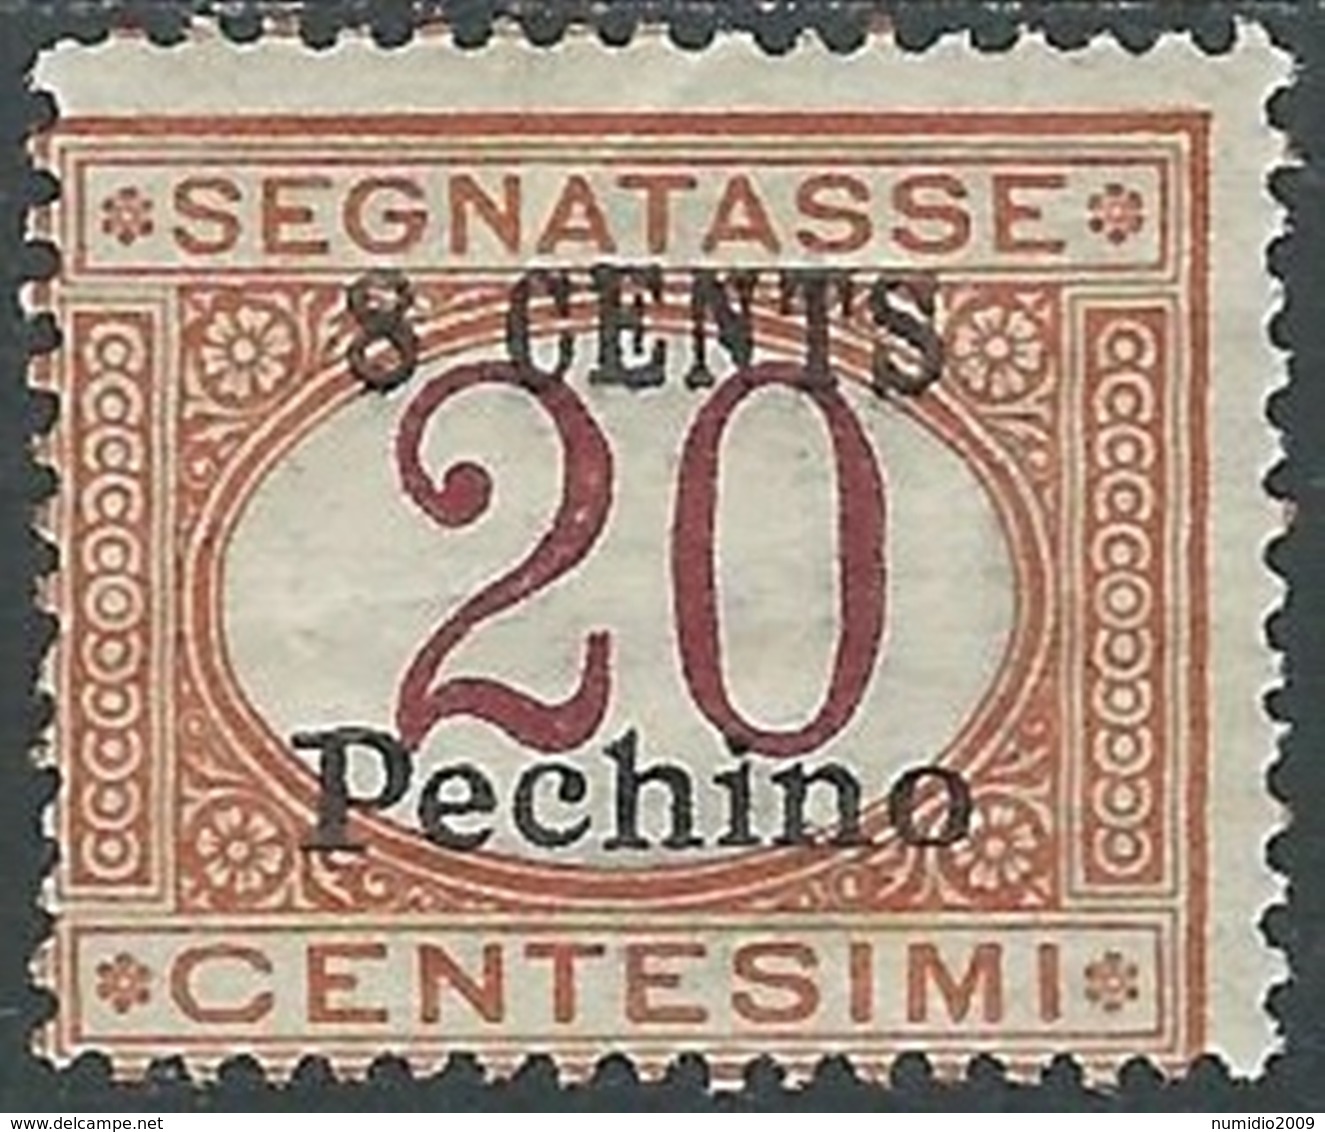 1918 CINA PECHINO SEGNATASSE 8 SU 20 CENT MH * - RB30-8 - Pékin